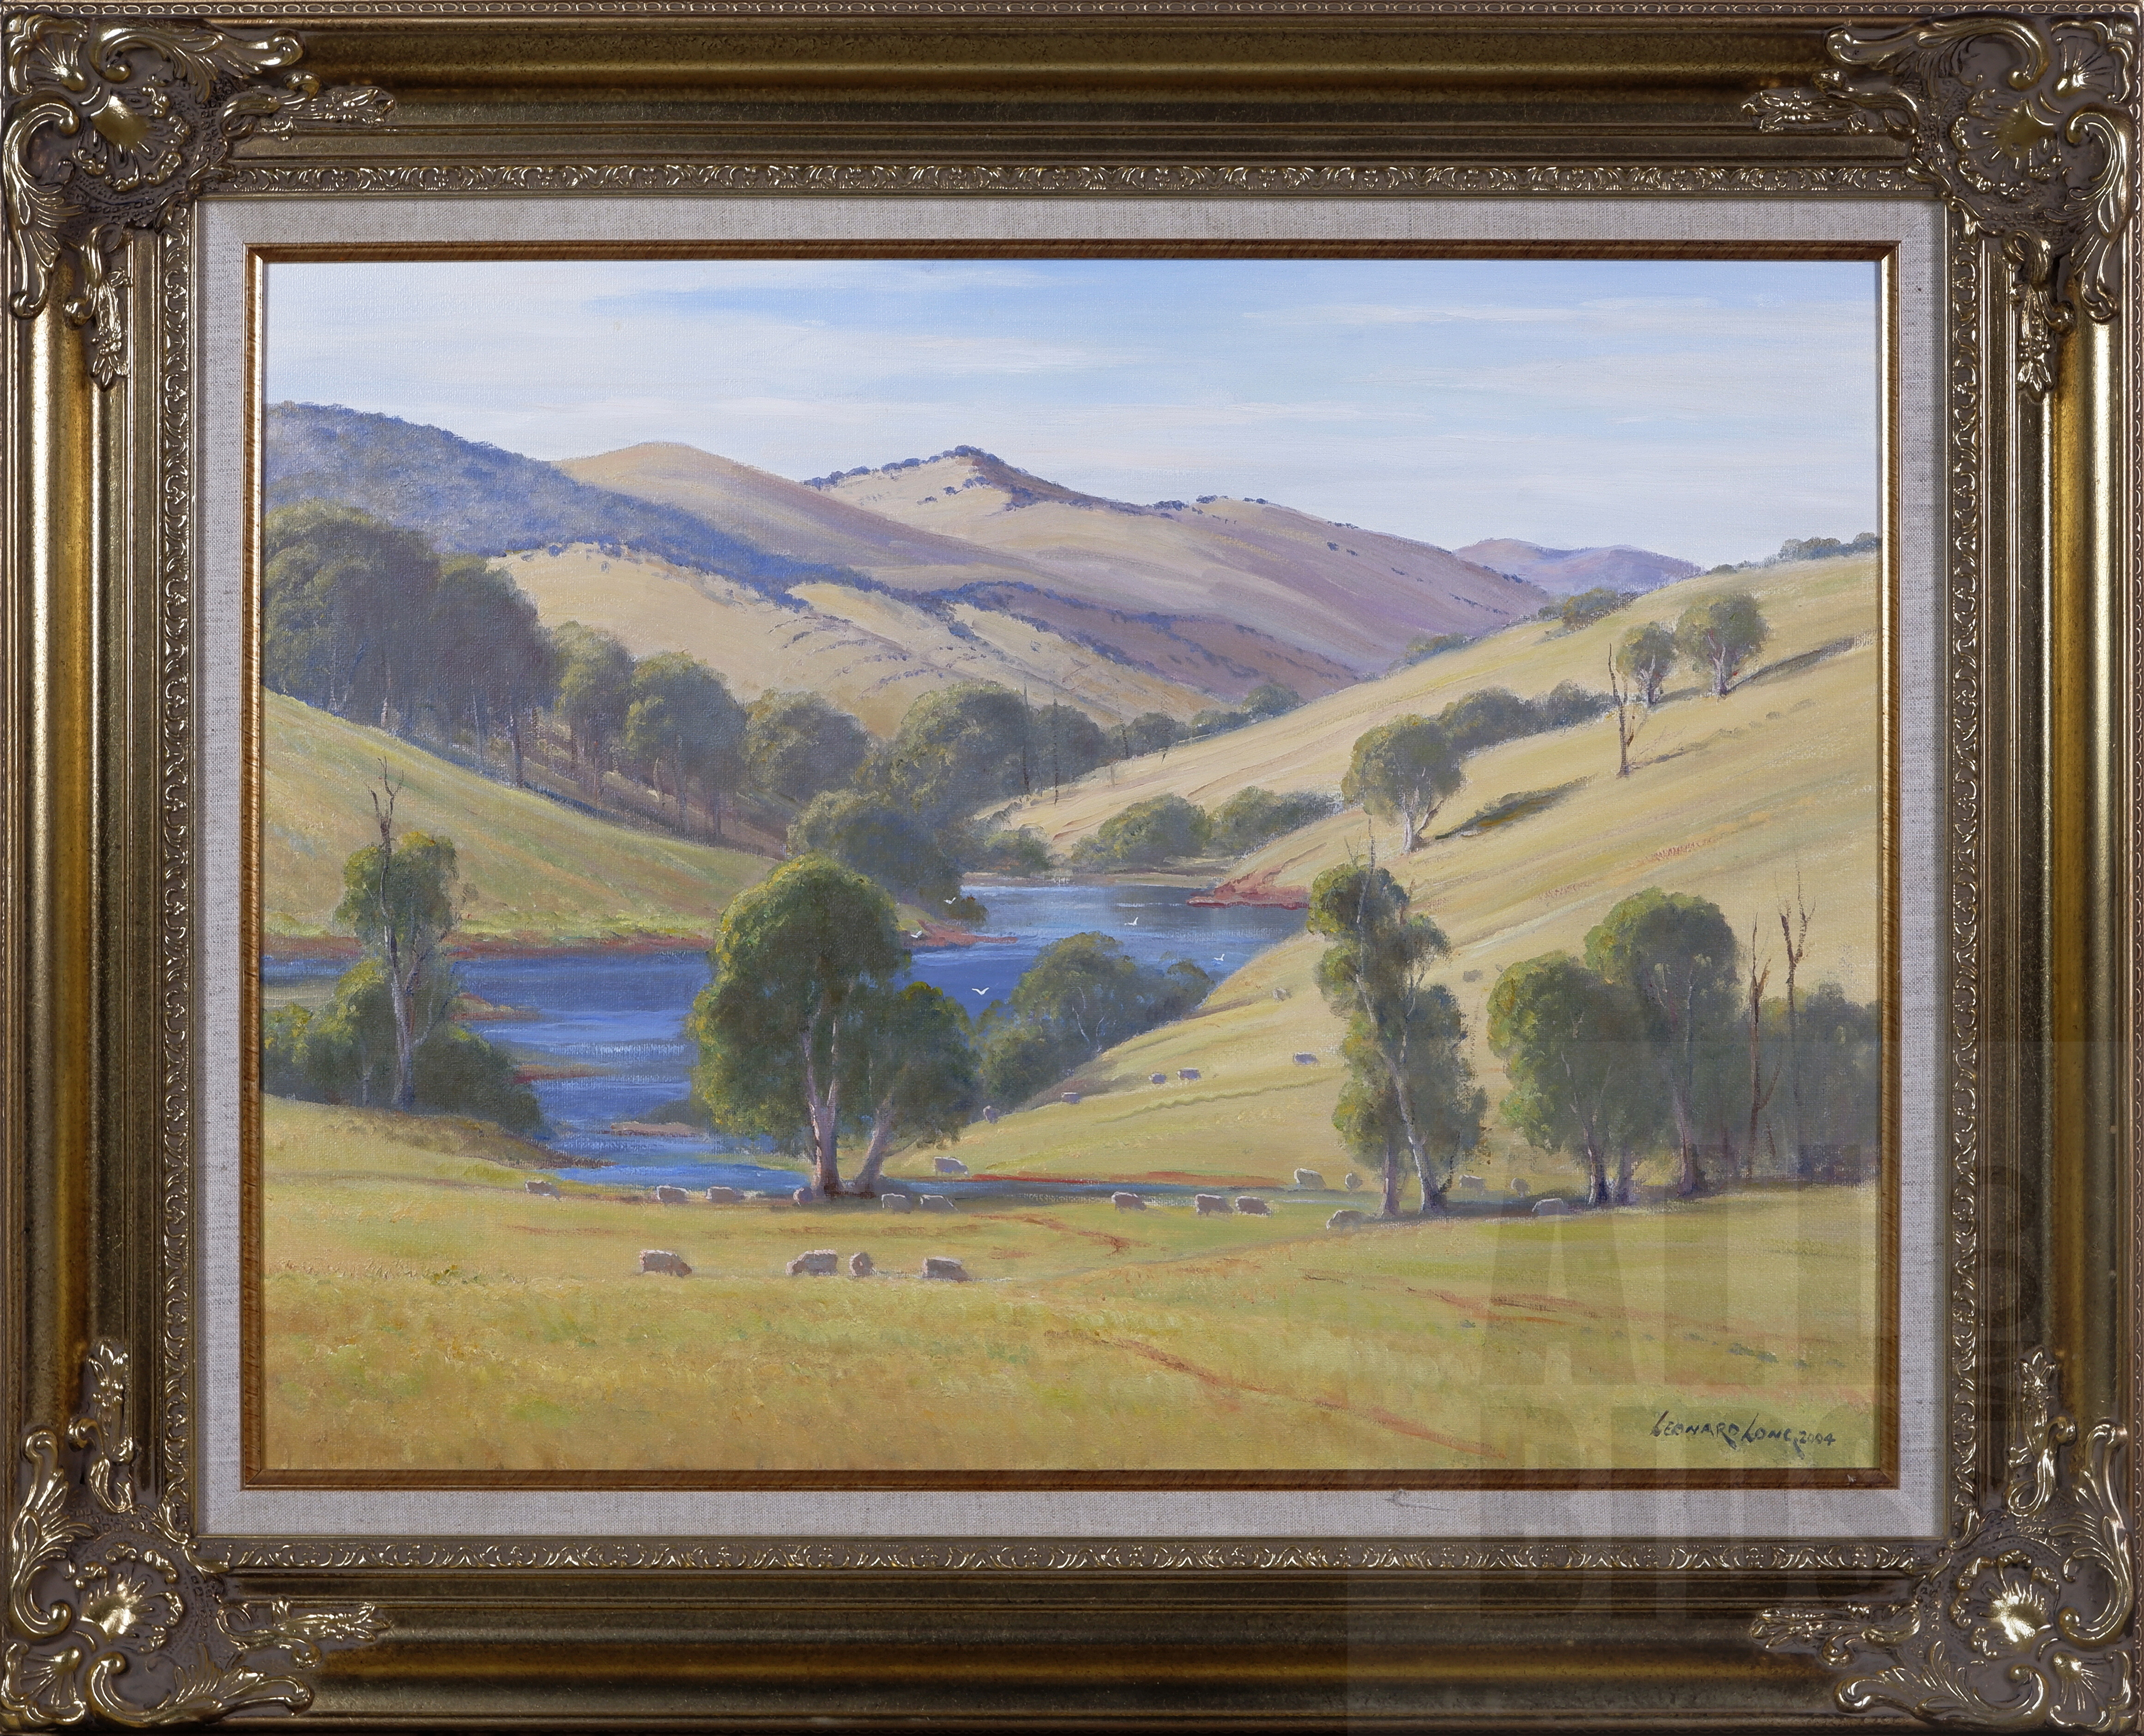 'Leonard Long (1911-2013), Mountain Creek, Wee Jasper - Yass Road 2004, Oil on Canvas on Board, 45 x 60 cm'